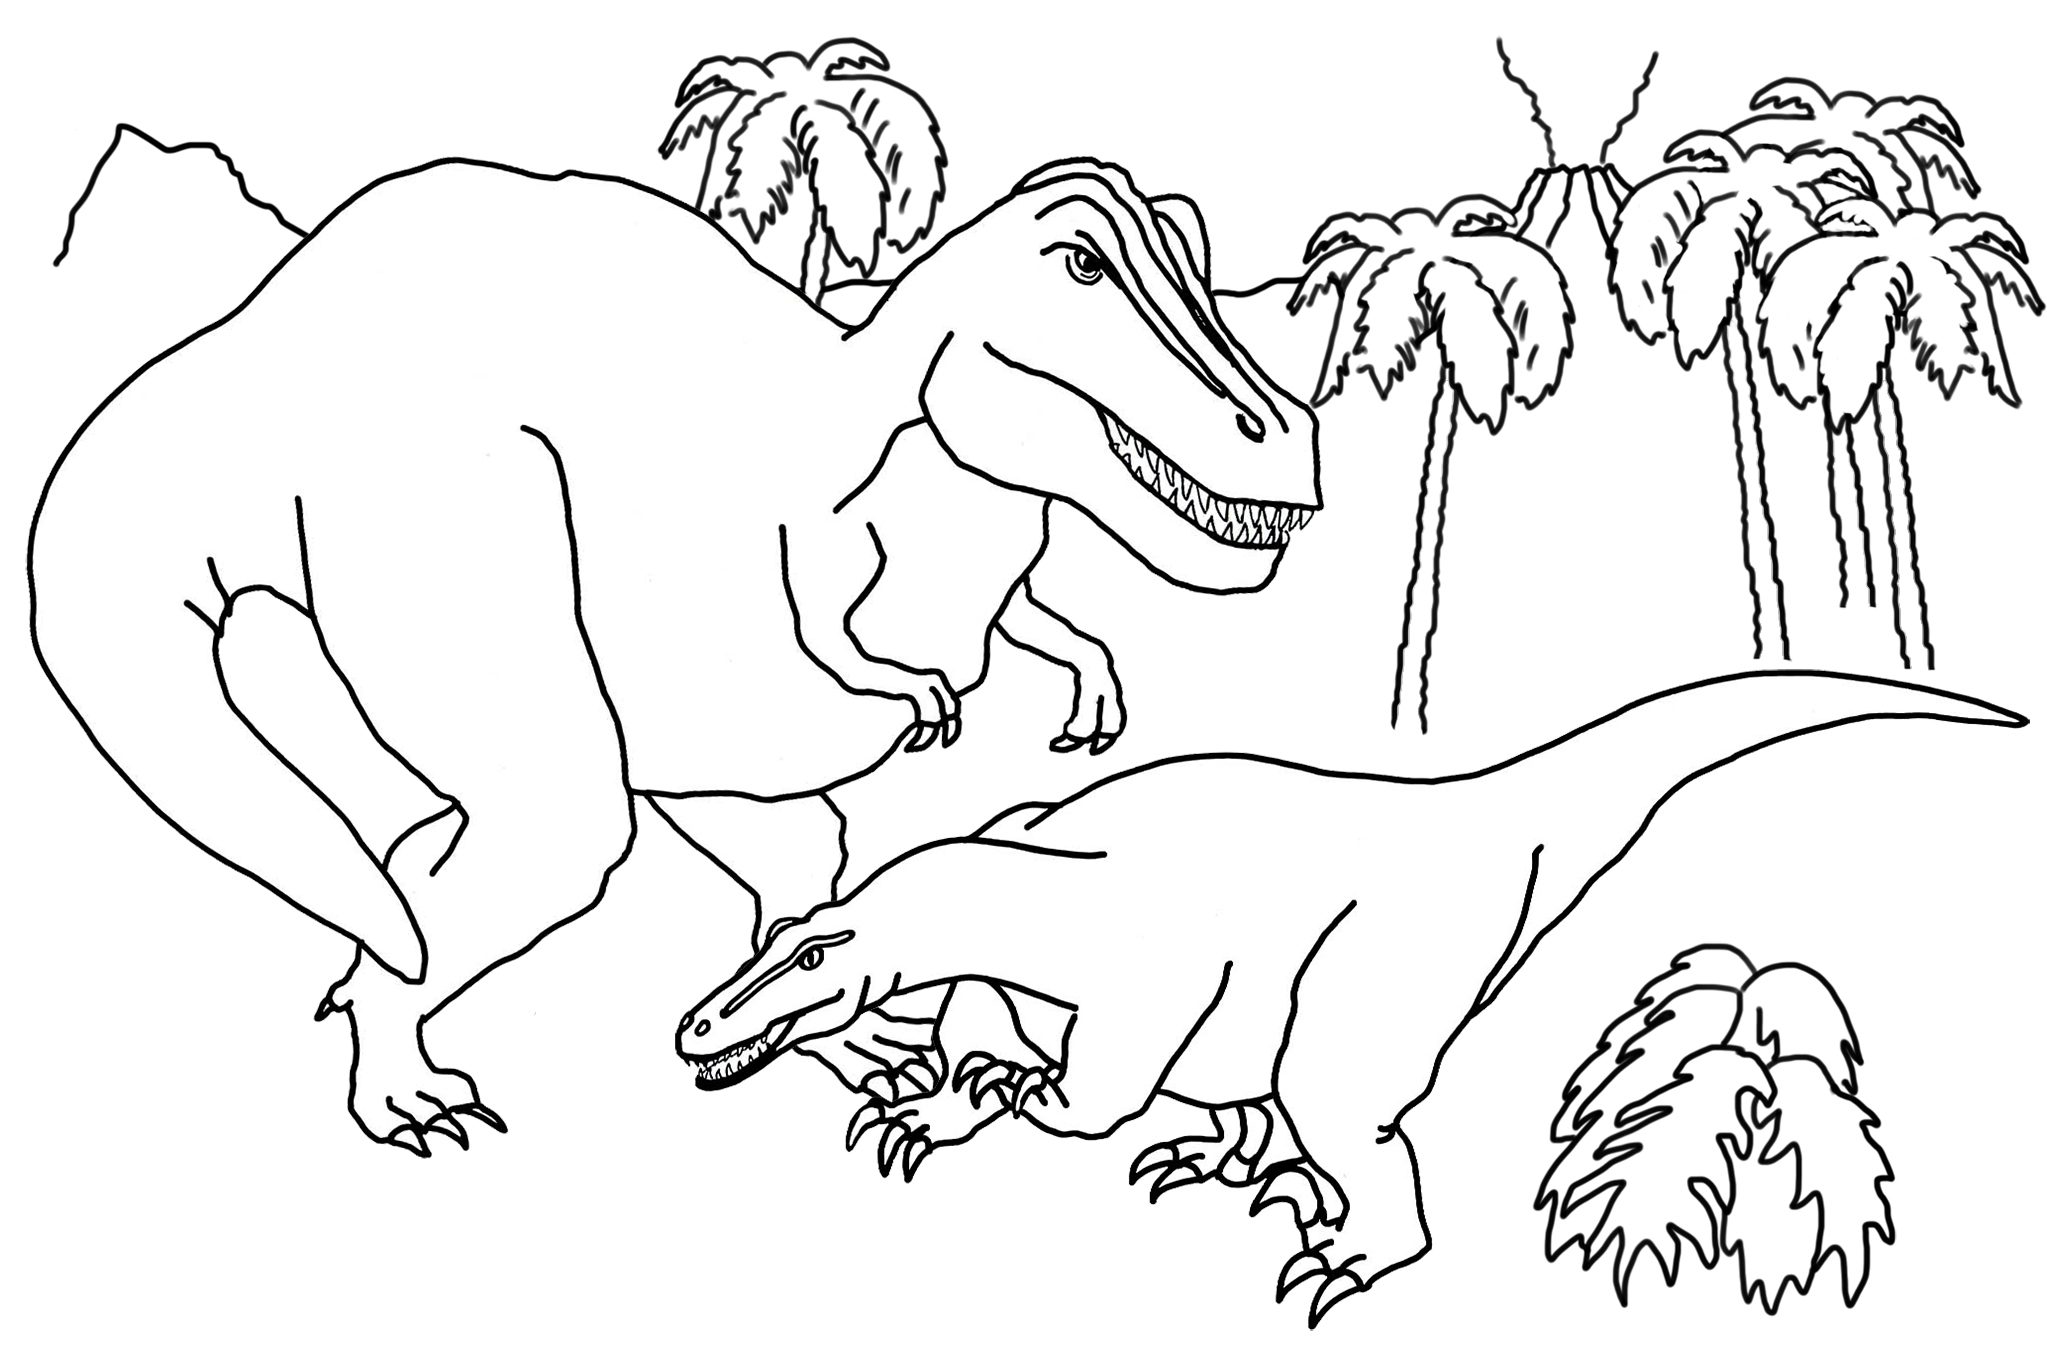 Раскраска динозавр формат а4. Динозавры / раскраска. Динозавр раскраска для детей. Раскраски для мальчиков динозавры. Раскраска "Динозаврики".